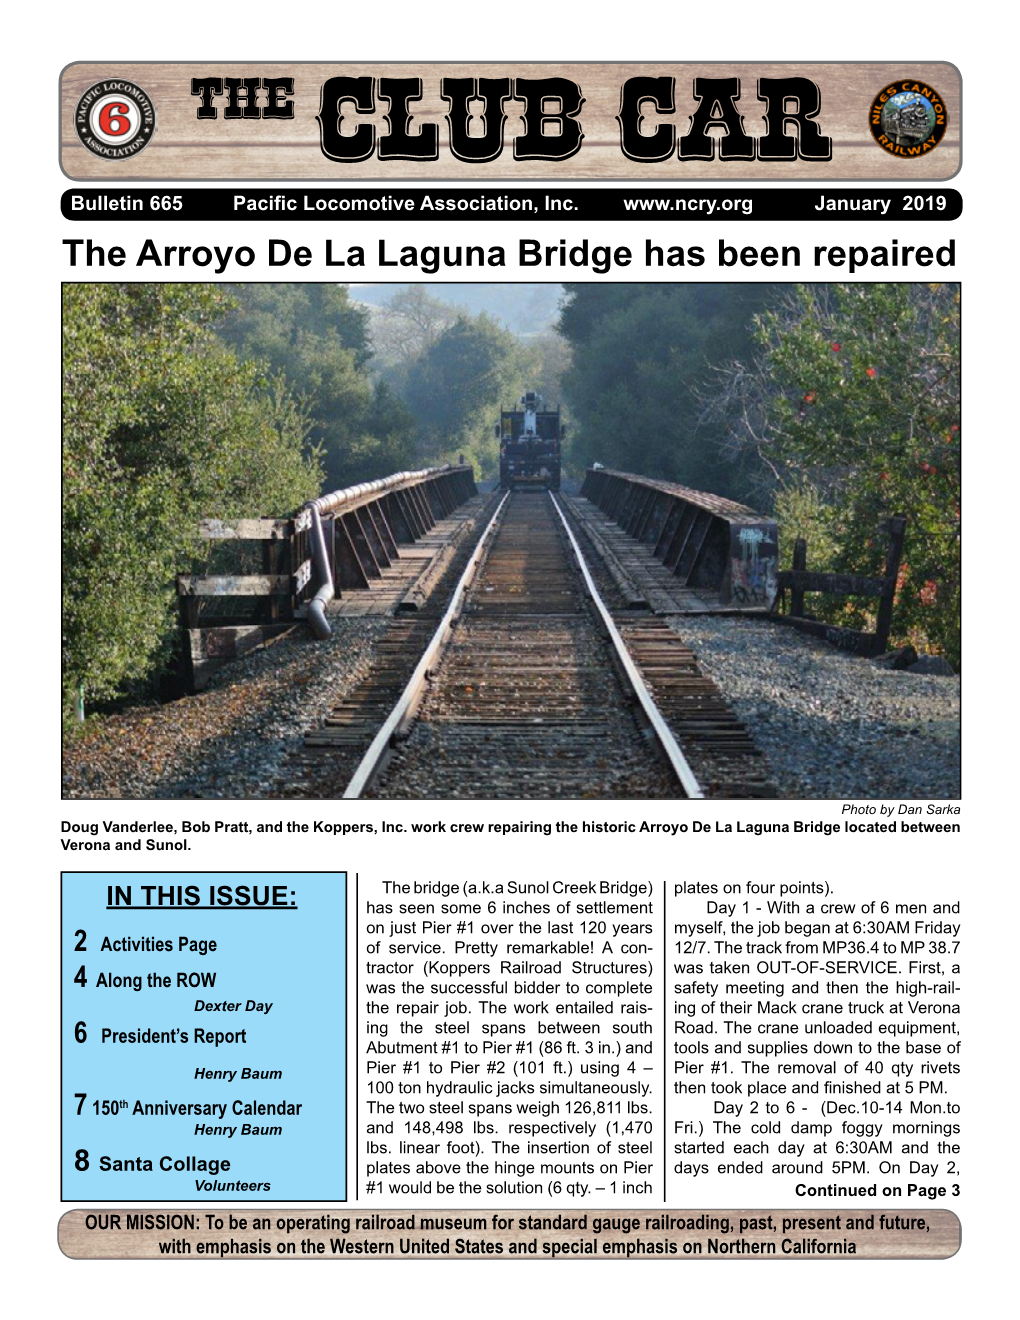 The Arroyo De La Laguna Bridge Has Been Repaired